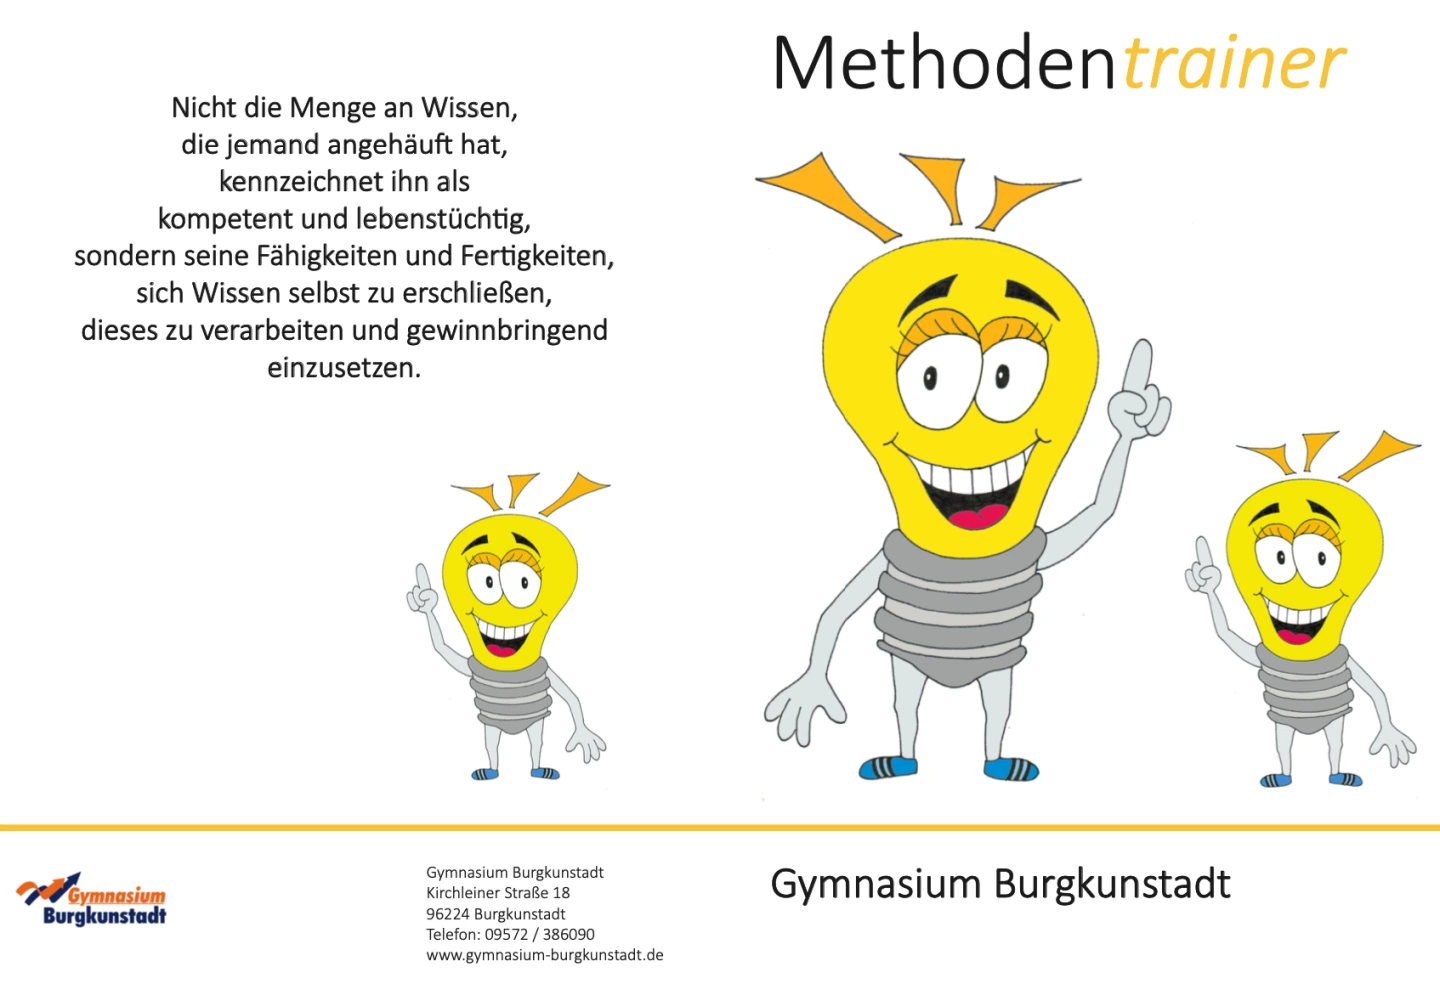 Titelbild des Methodentrainers des Gymnasiums Burgkunstadt